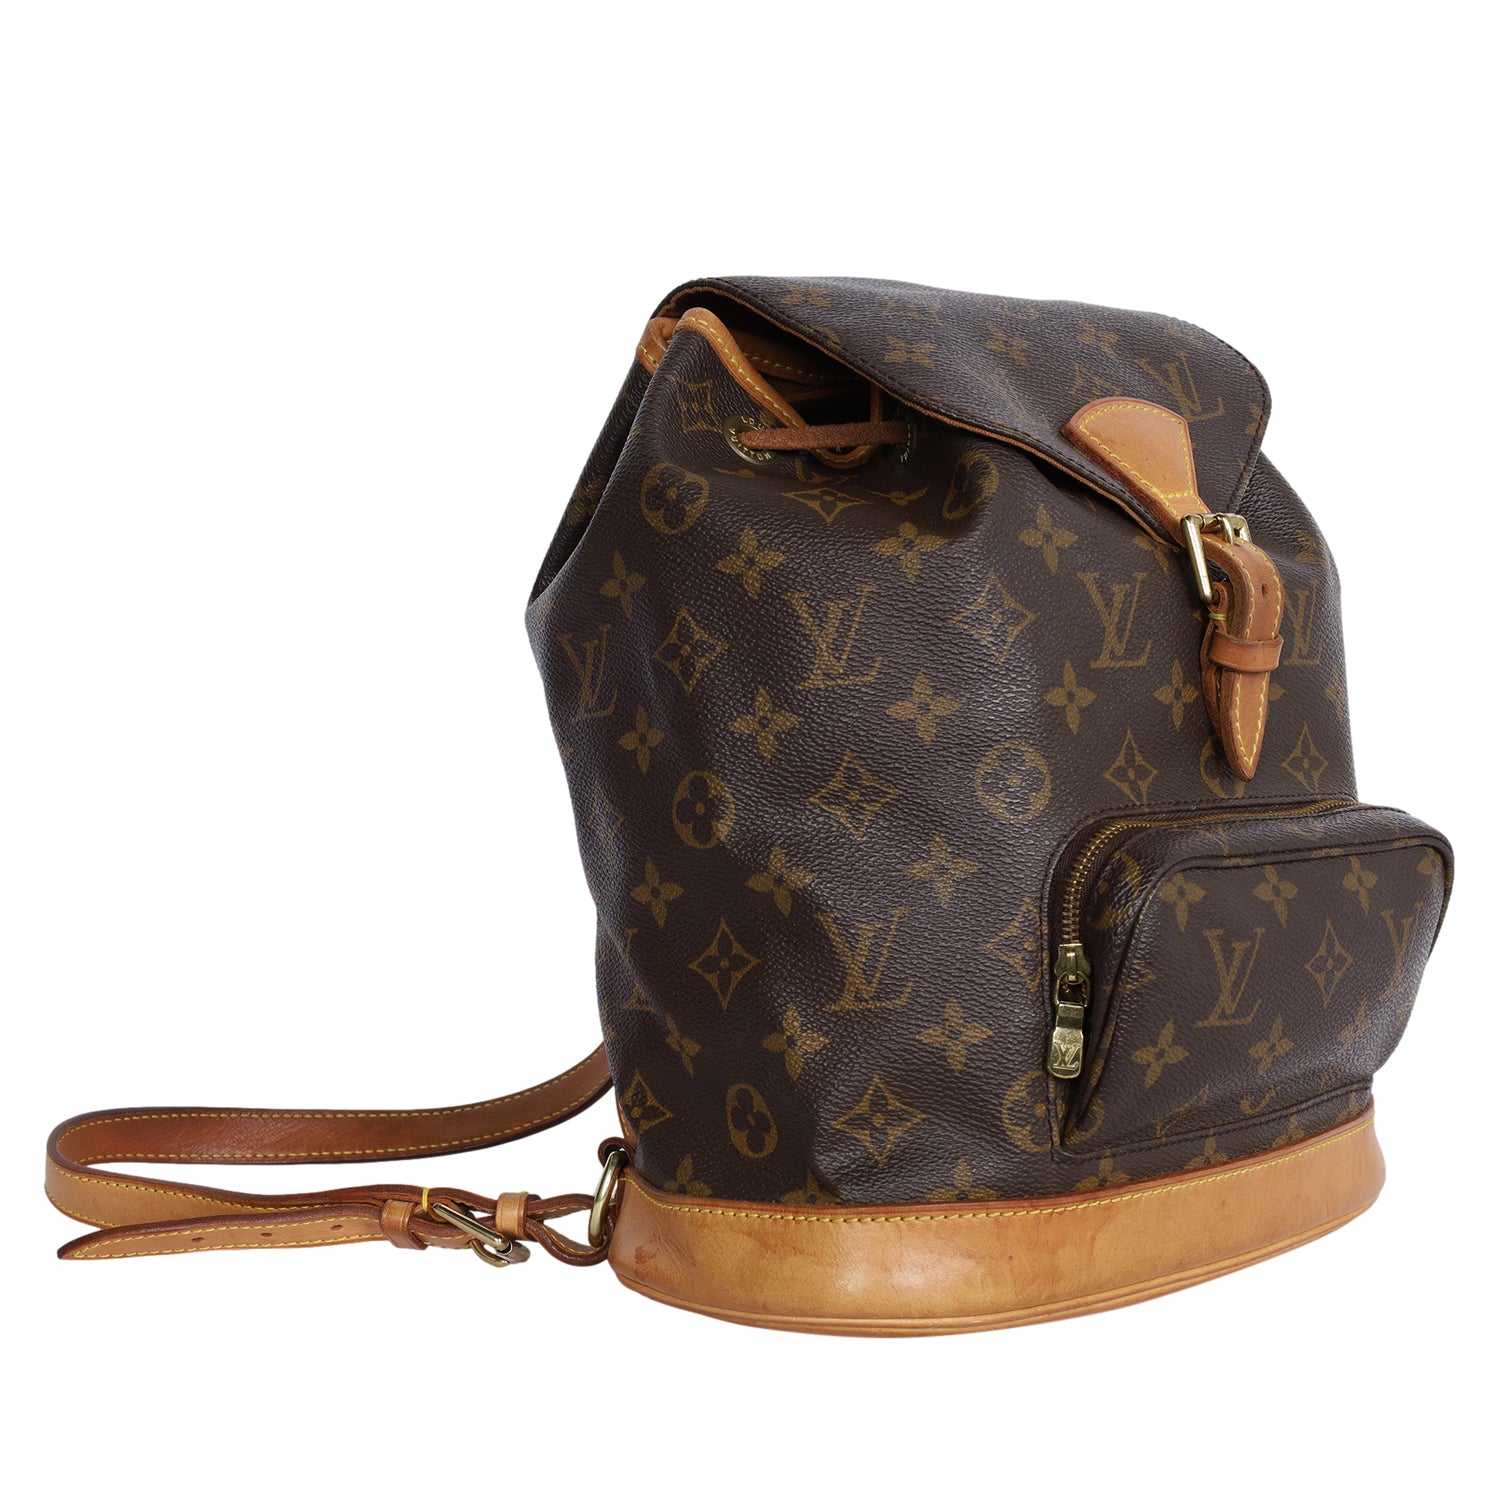 Louis Vuitton Backpack Montsouris Mini